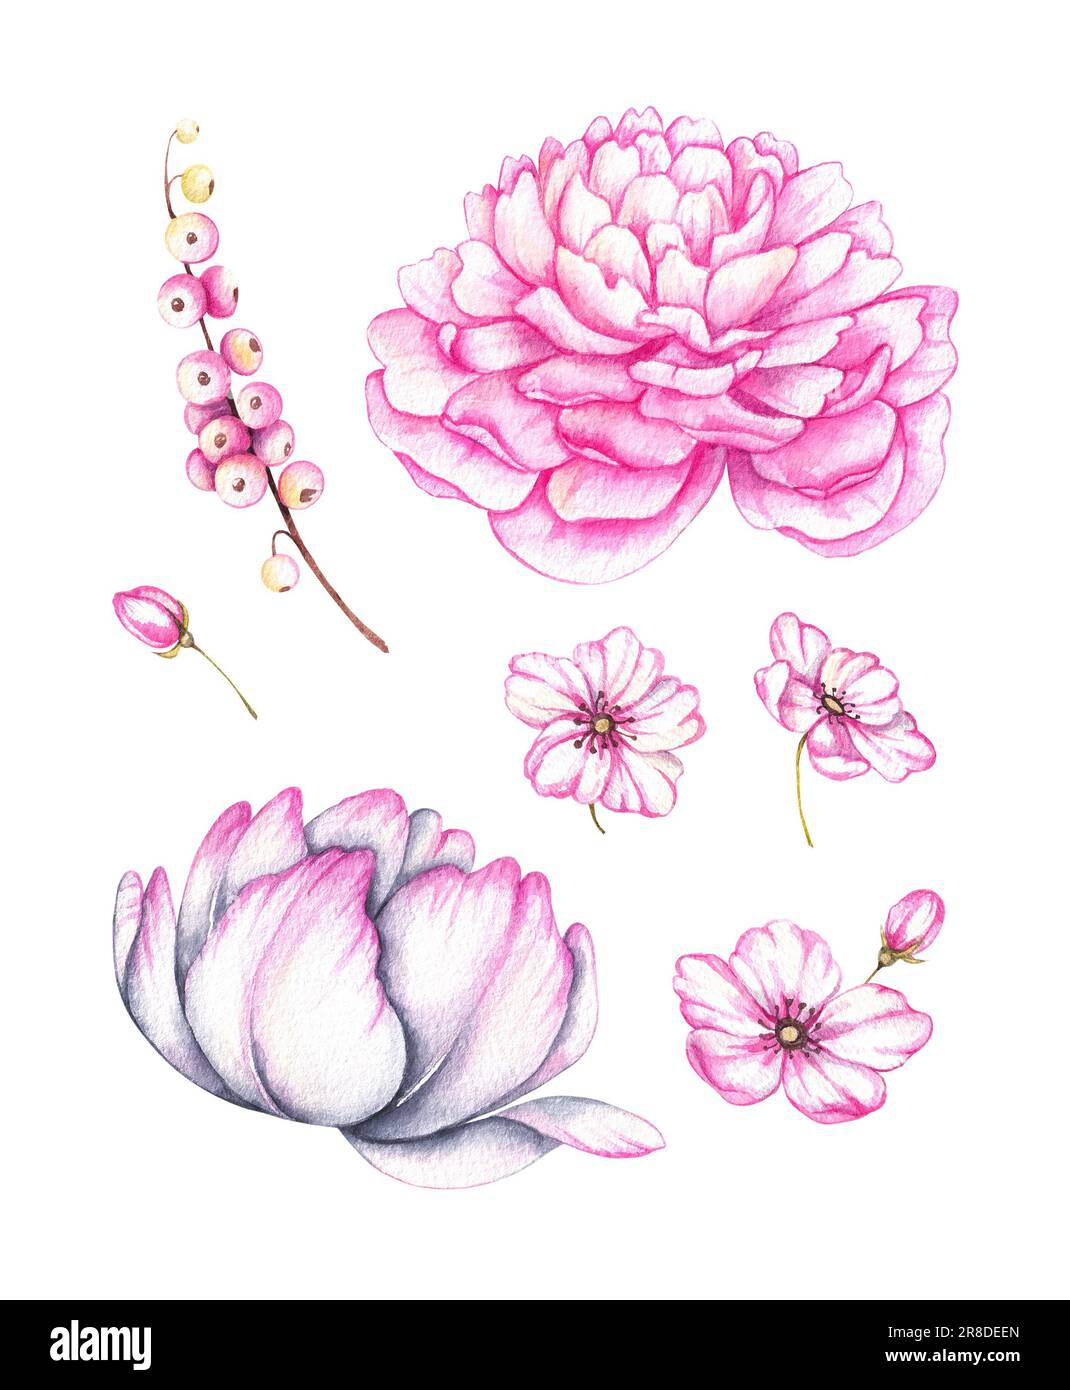 Acquerello Set di fiori rosa su sfondo bianco. Peony, fiori di melo, tulipano per la progettazione di schede di primavera, festival, inviti, banner, bu Foto Stock